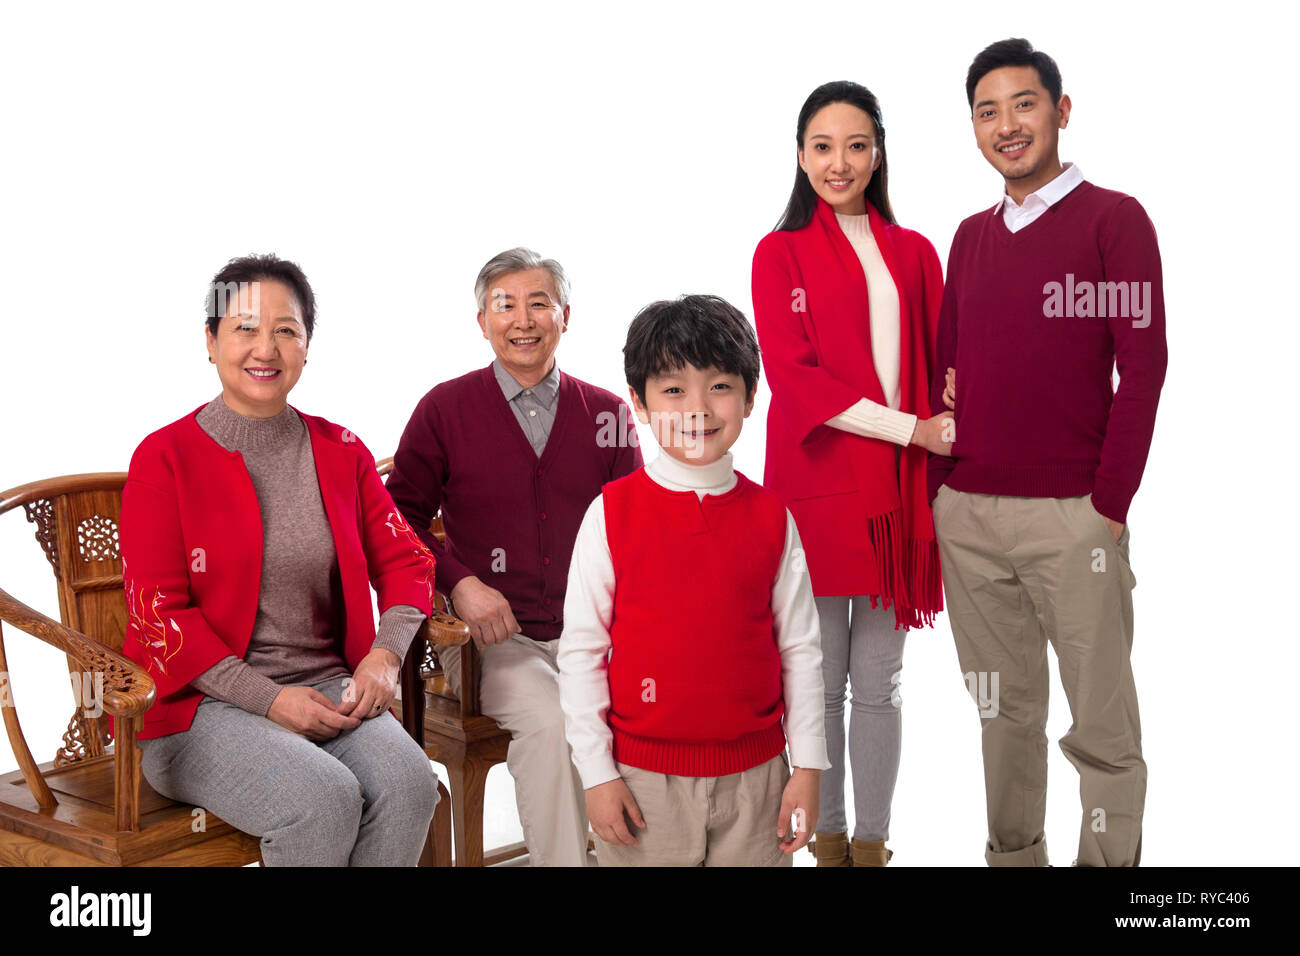 Happy New Year's family Stock Photo